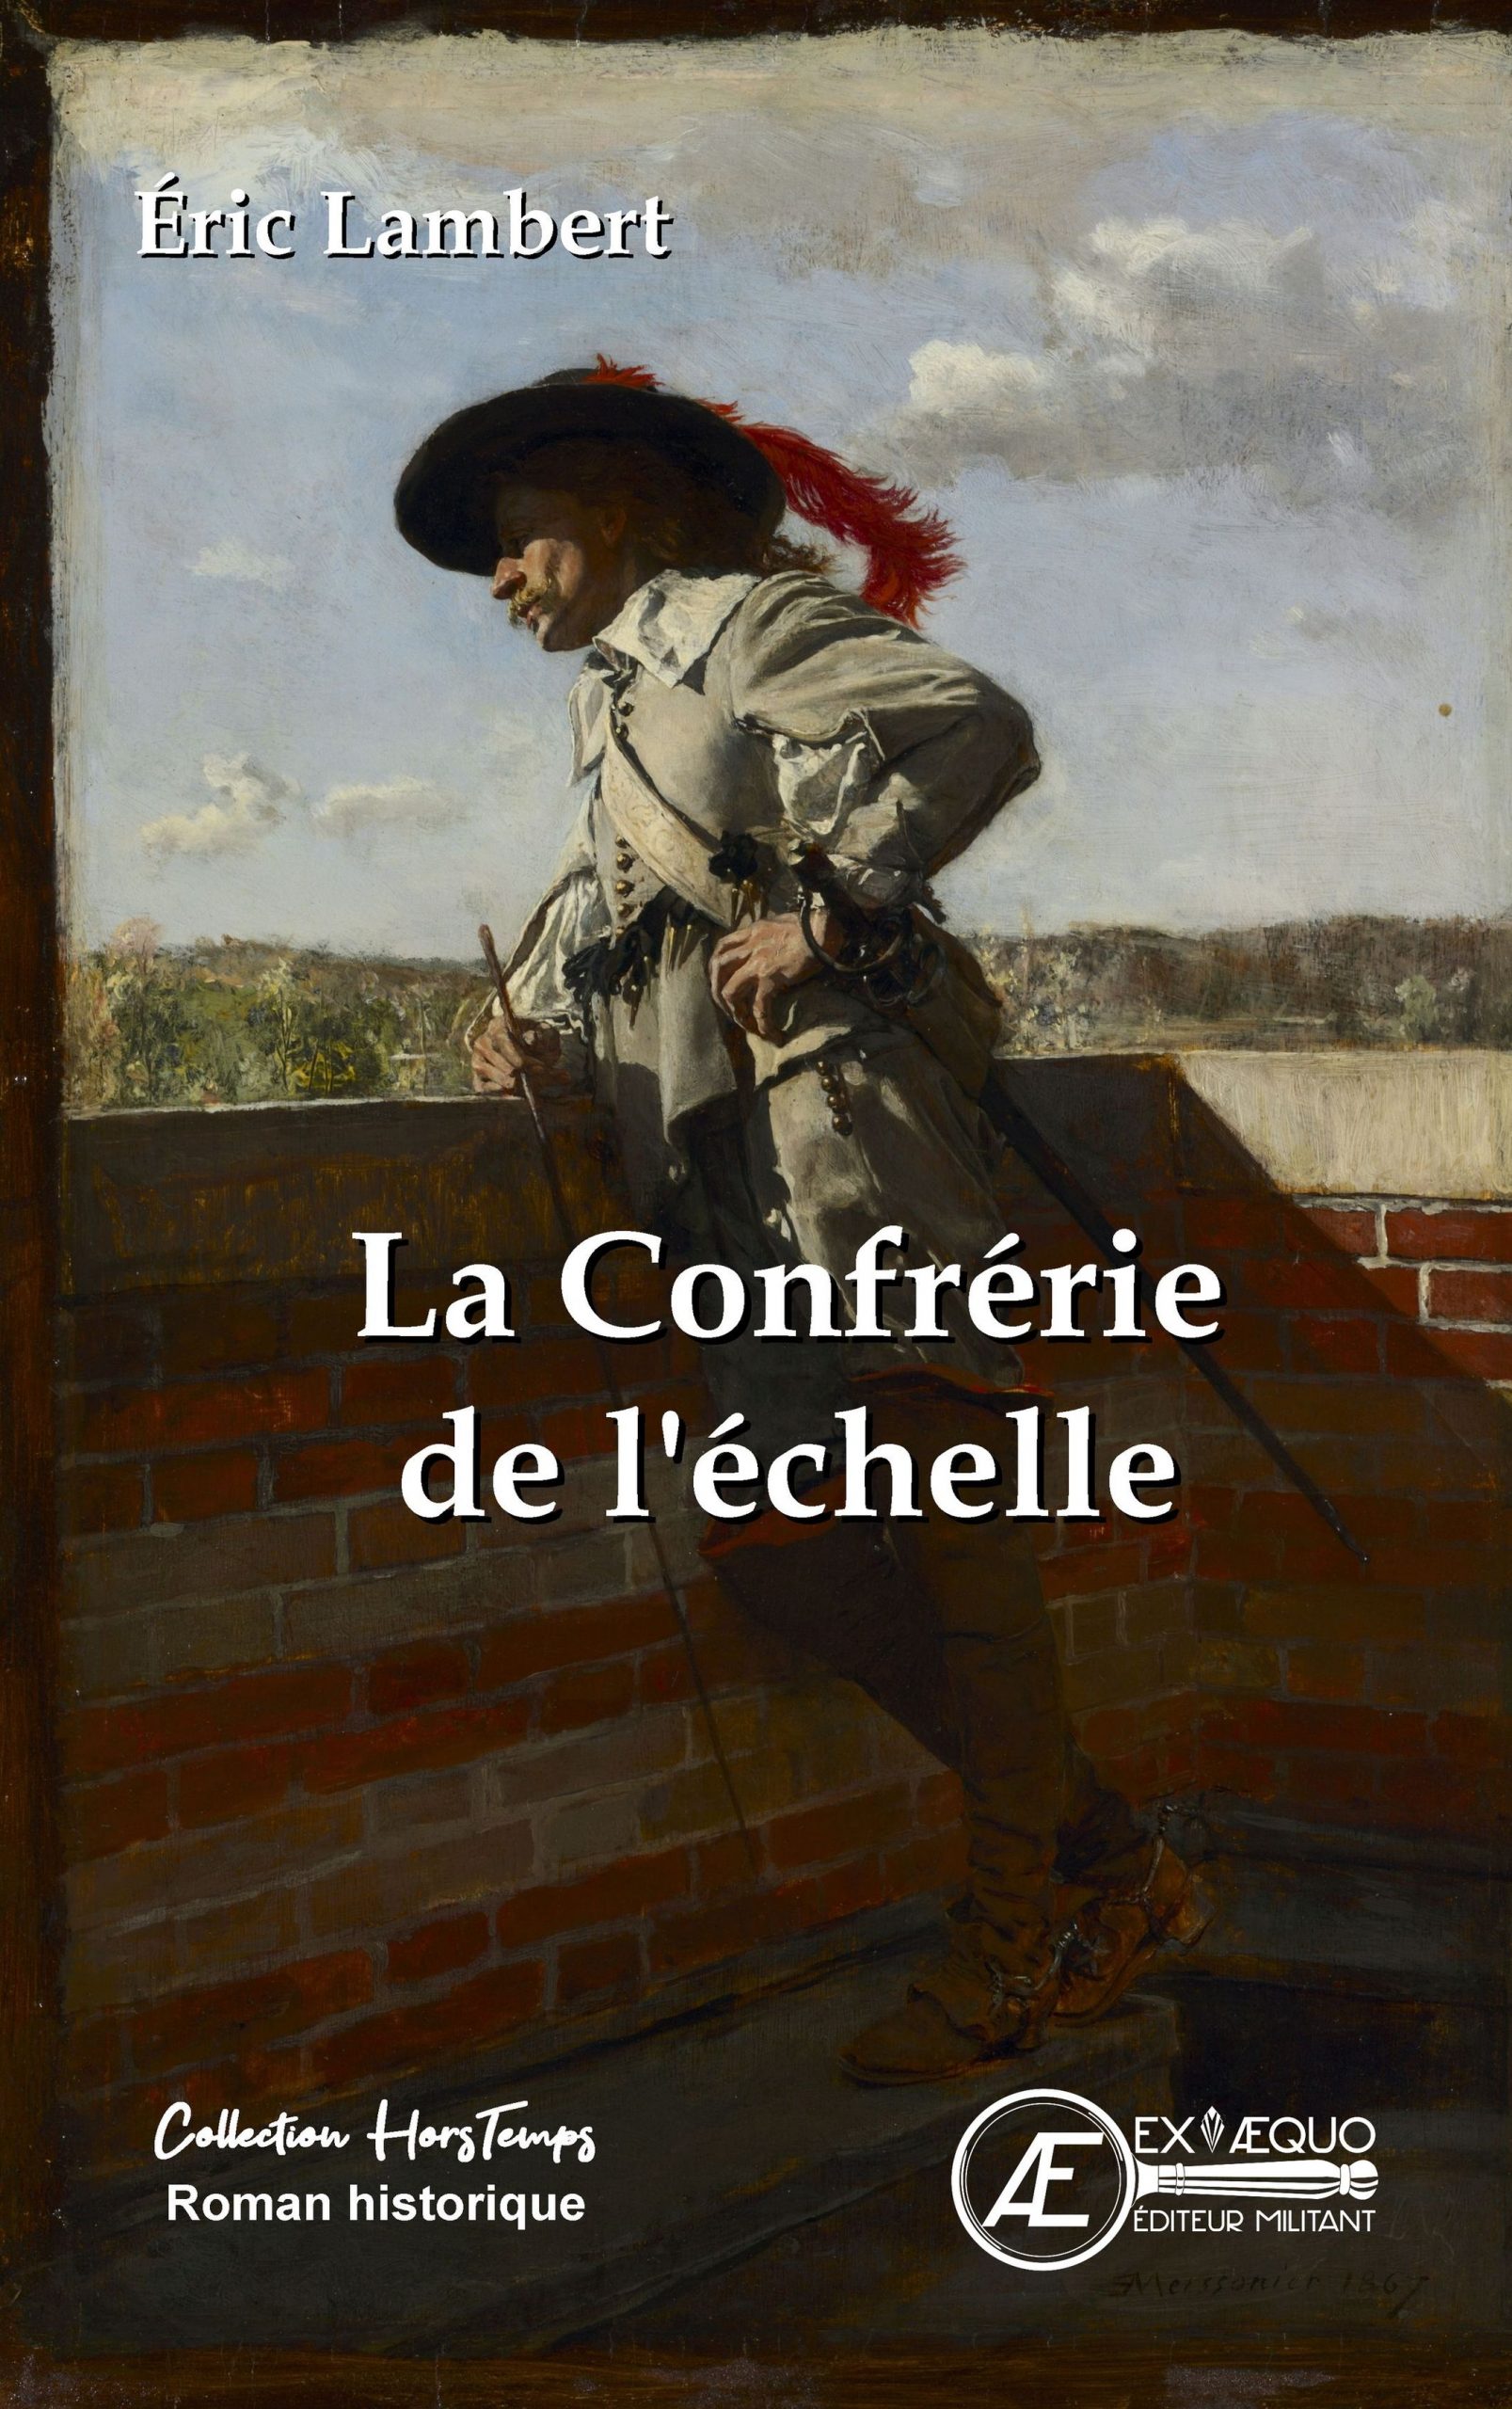 You are currently viewing La confrérie de l’Echelle, d’Eric Lambert